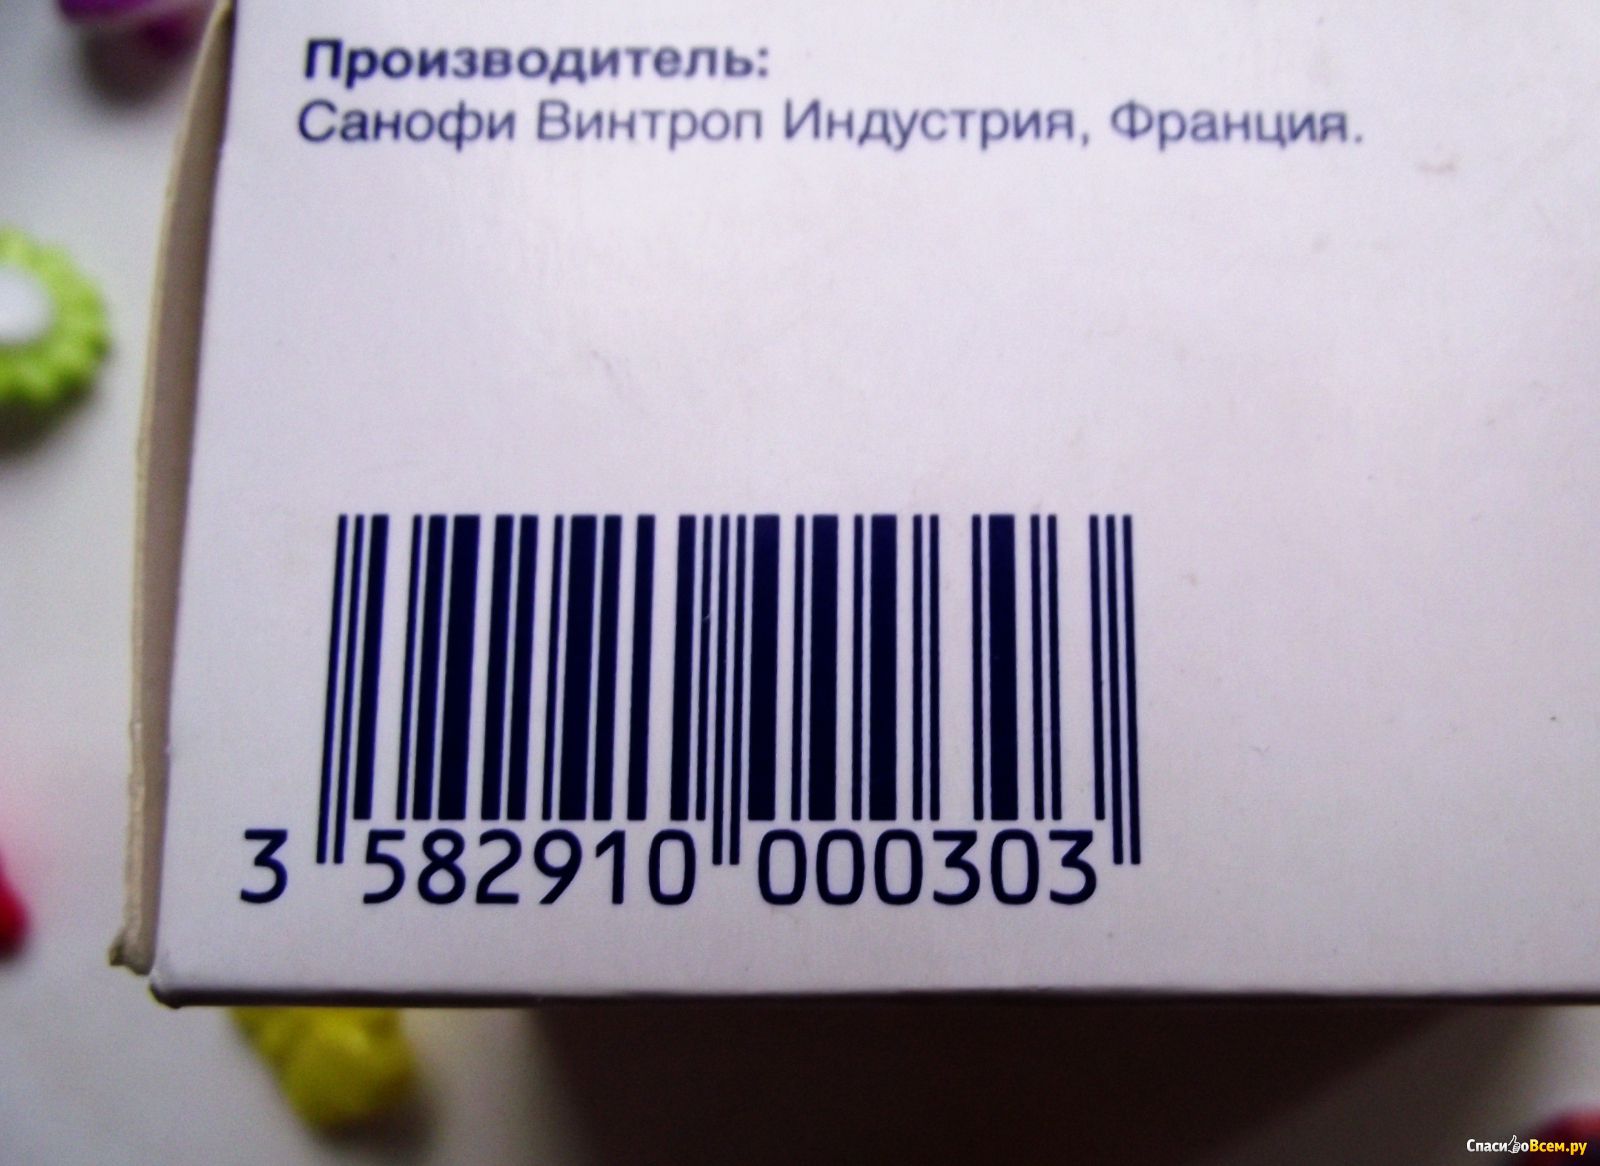 Прод код. Штрих коды на лекарствах. Штрих код лекарственных препаратов. Штриховой код на лекарства. Штрих код на упаковке.